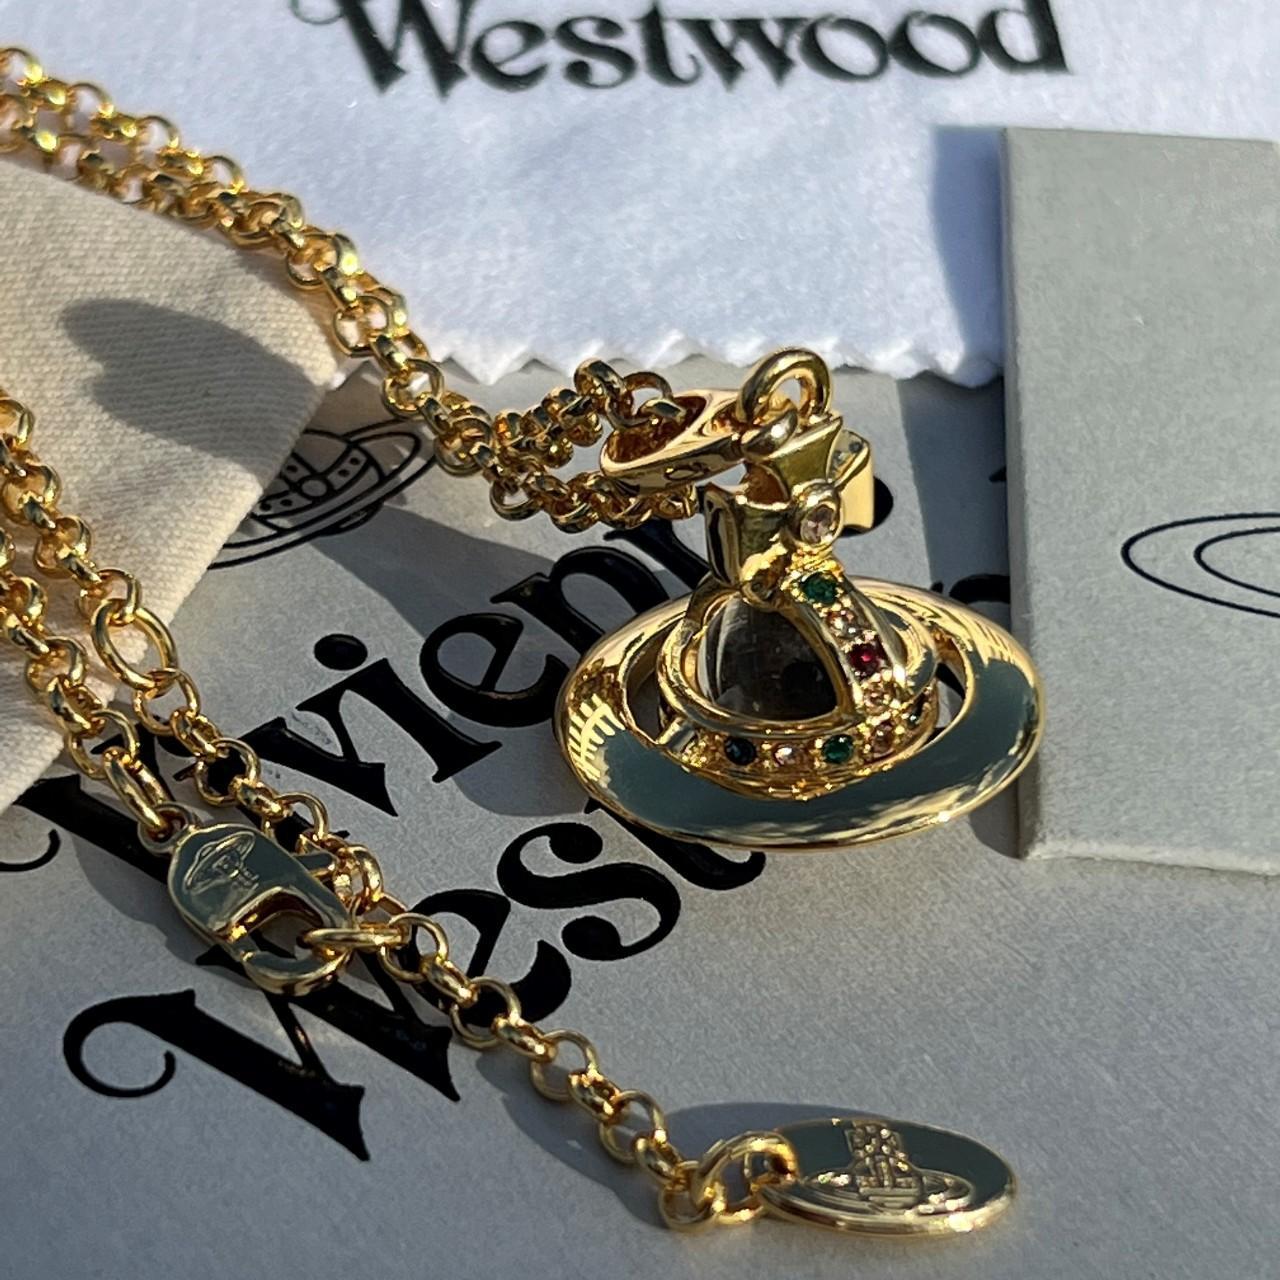 Vivienne Westwood Women's Gold Jewellery | Depop